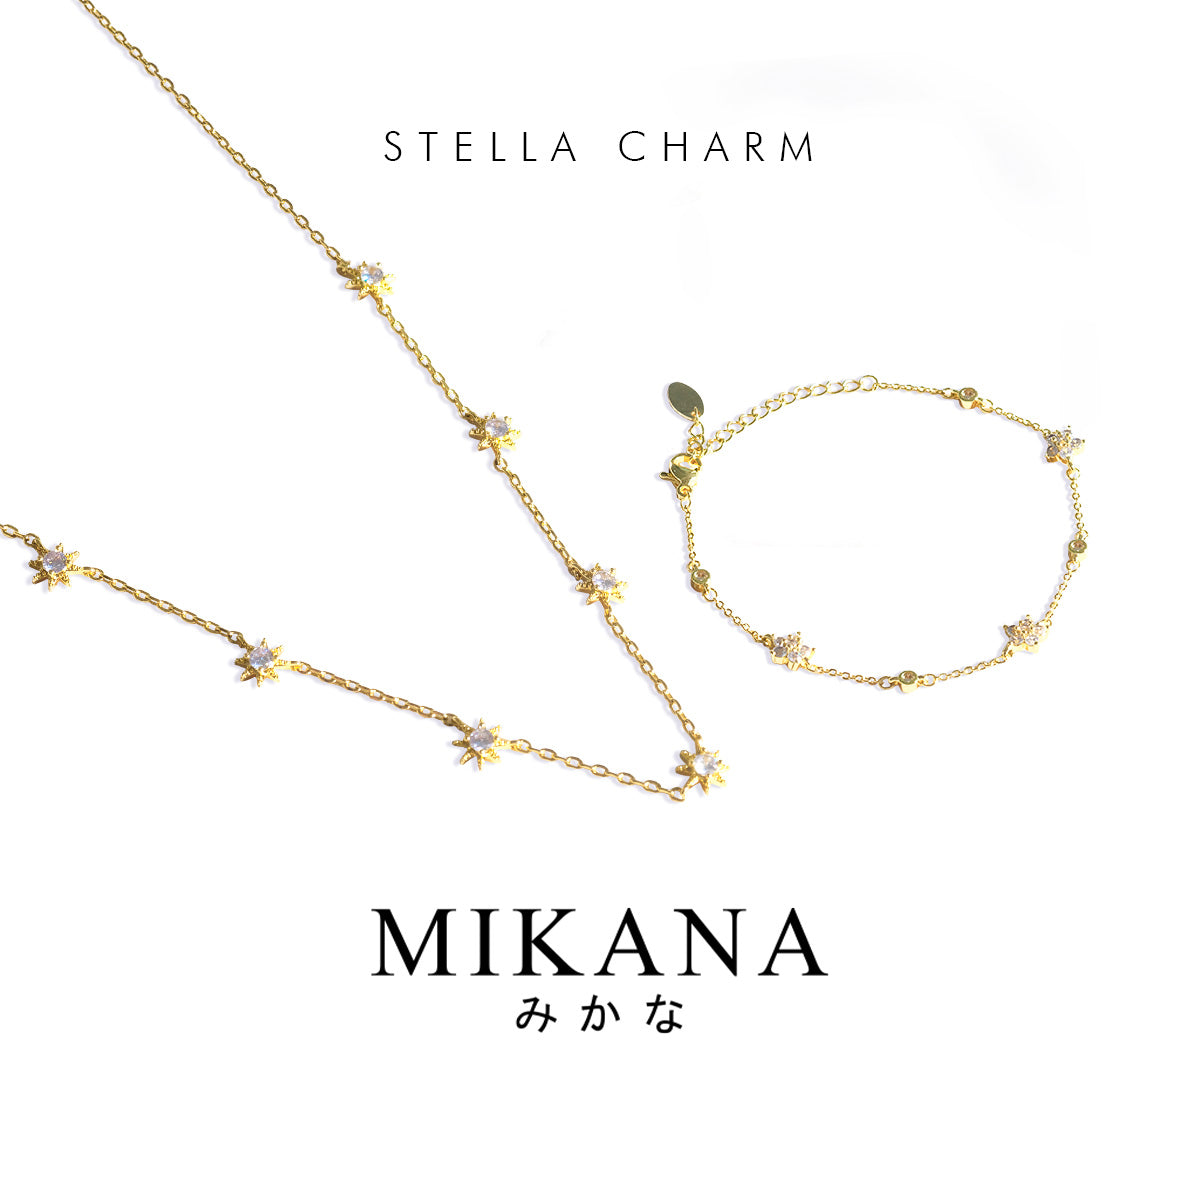 Stella Charms Jewelry Set